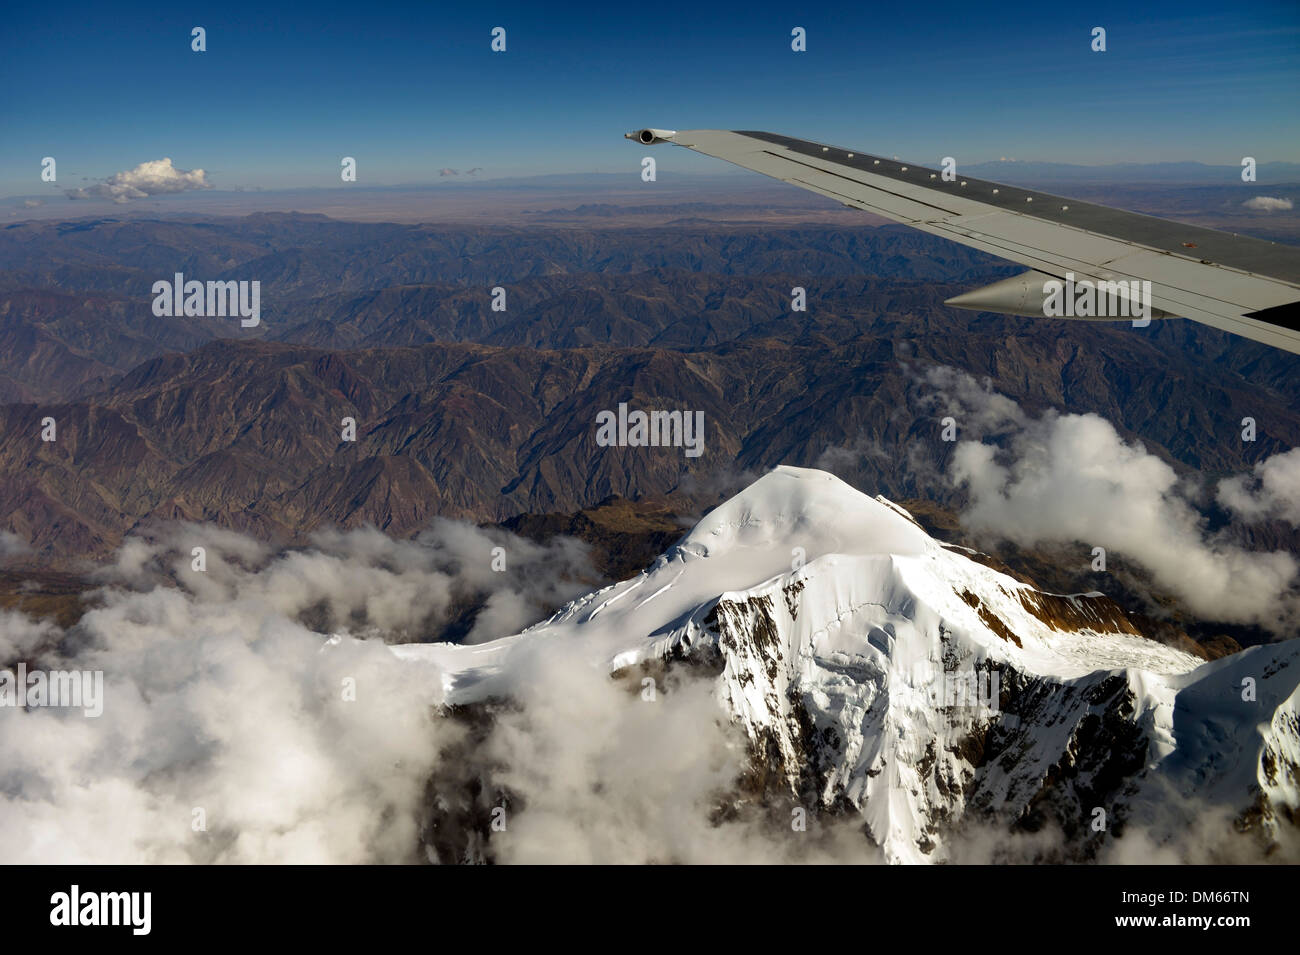 Glacier Illimani, 6 439 m, vue à partir d'un aéronef, La Paz, Bolivie Banque D'Images